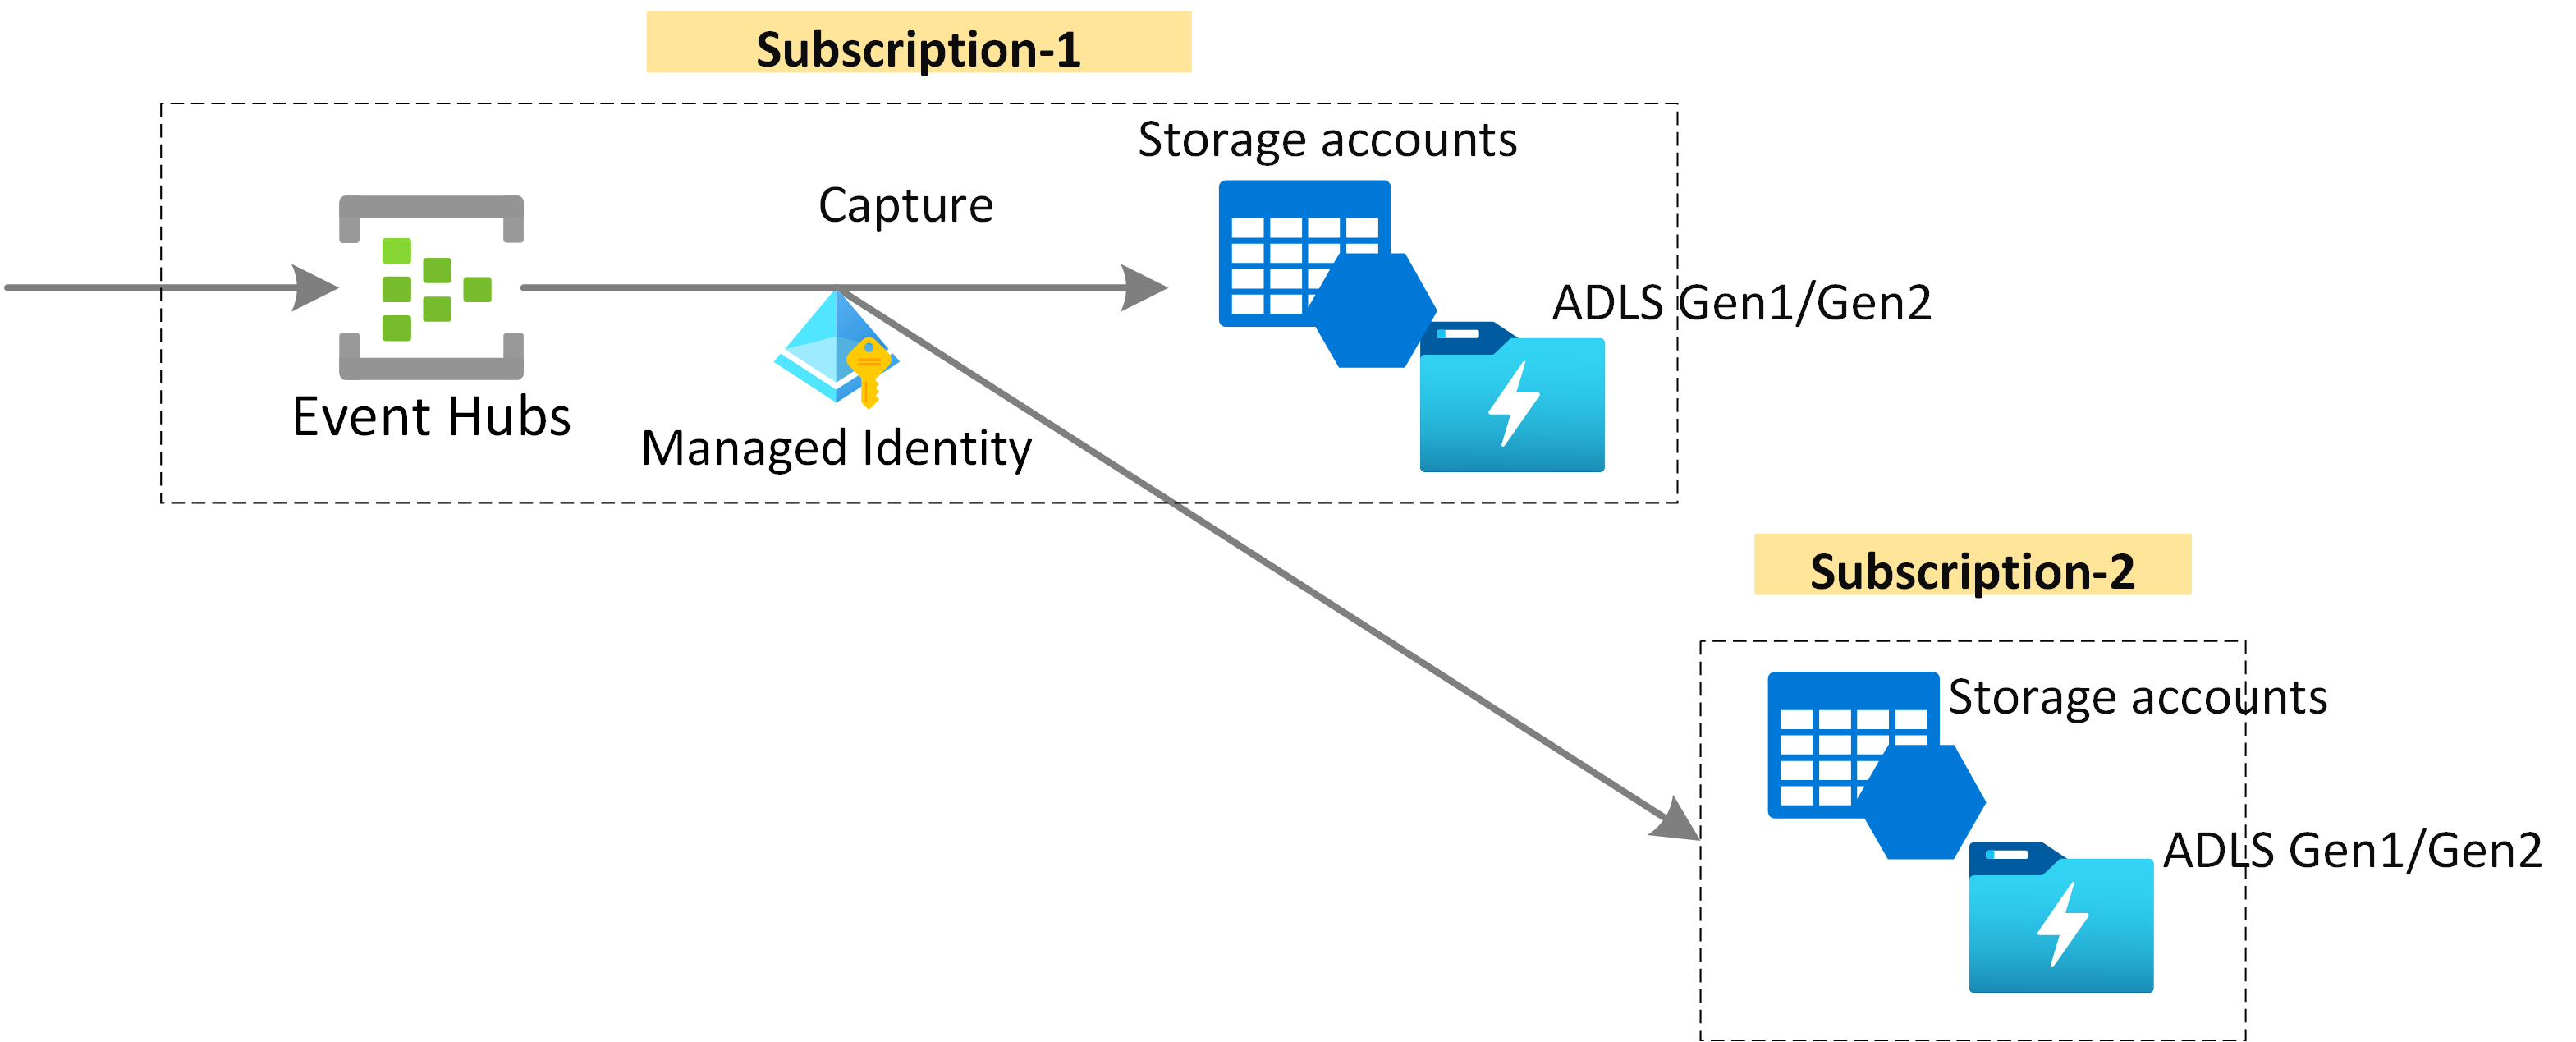 示意图显示了如何使用托管标识将事件中心数据捕获到 Azure 存储或 Azure Data Lake Storage 中。